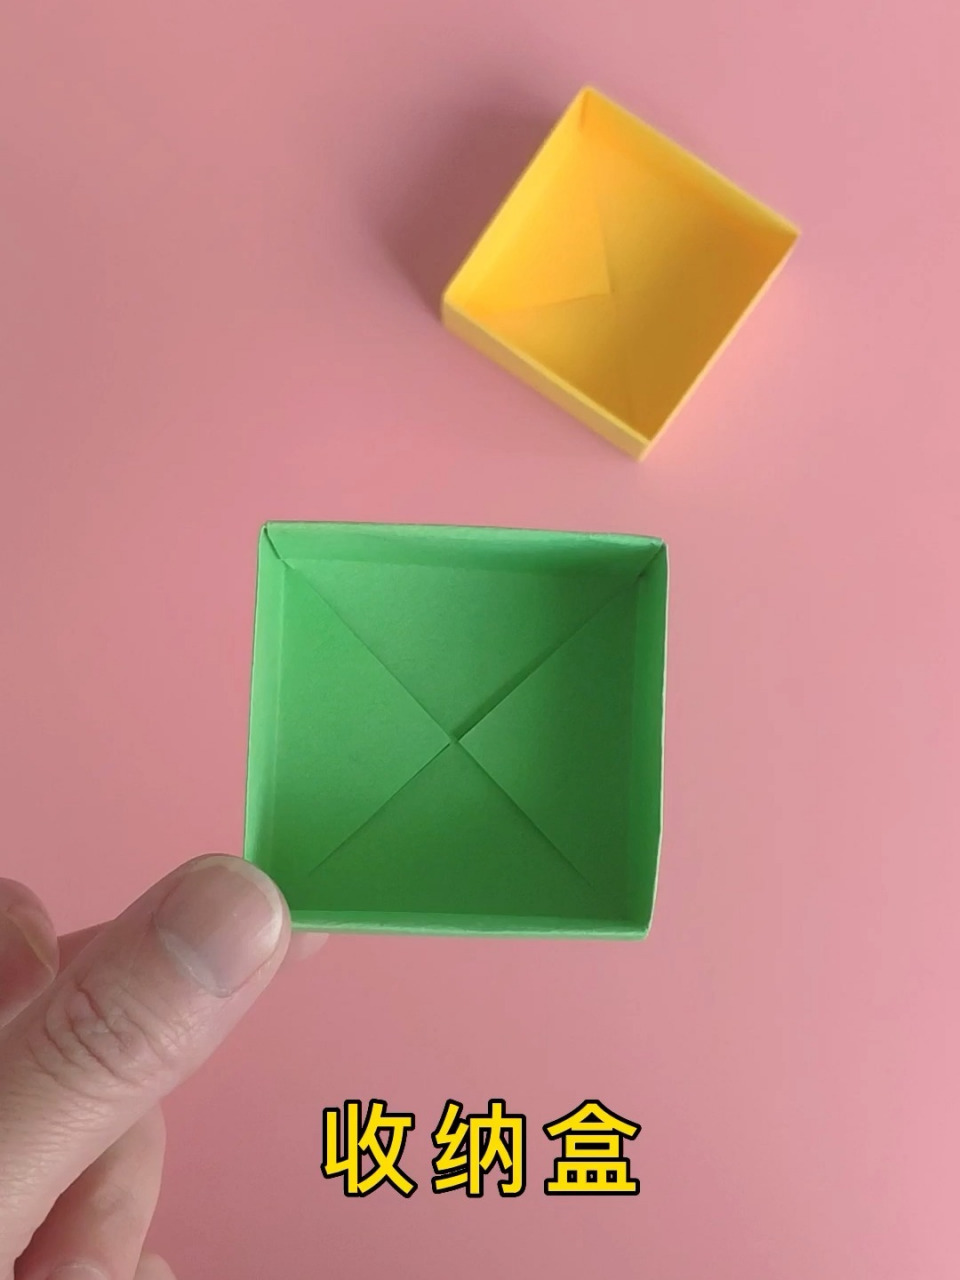 正方体盒子折叠方法图片